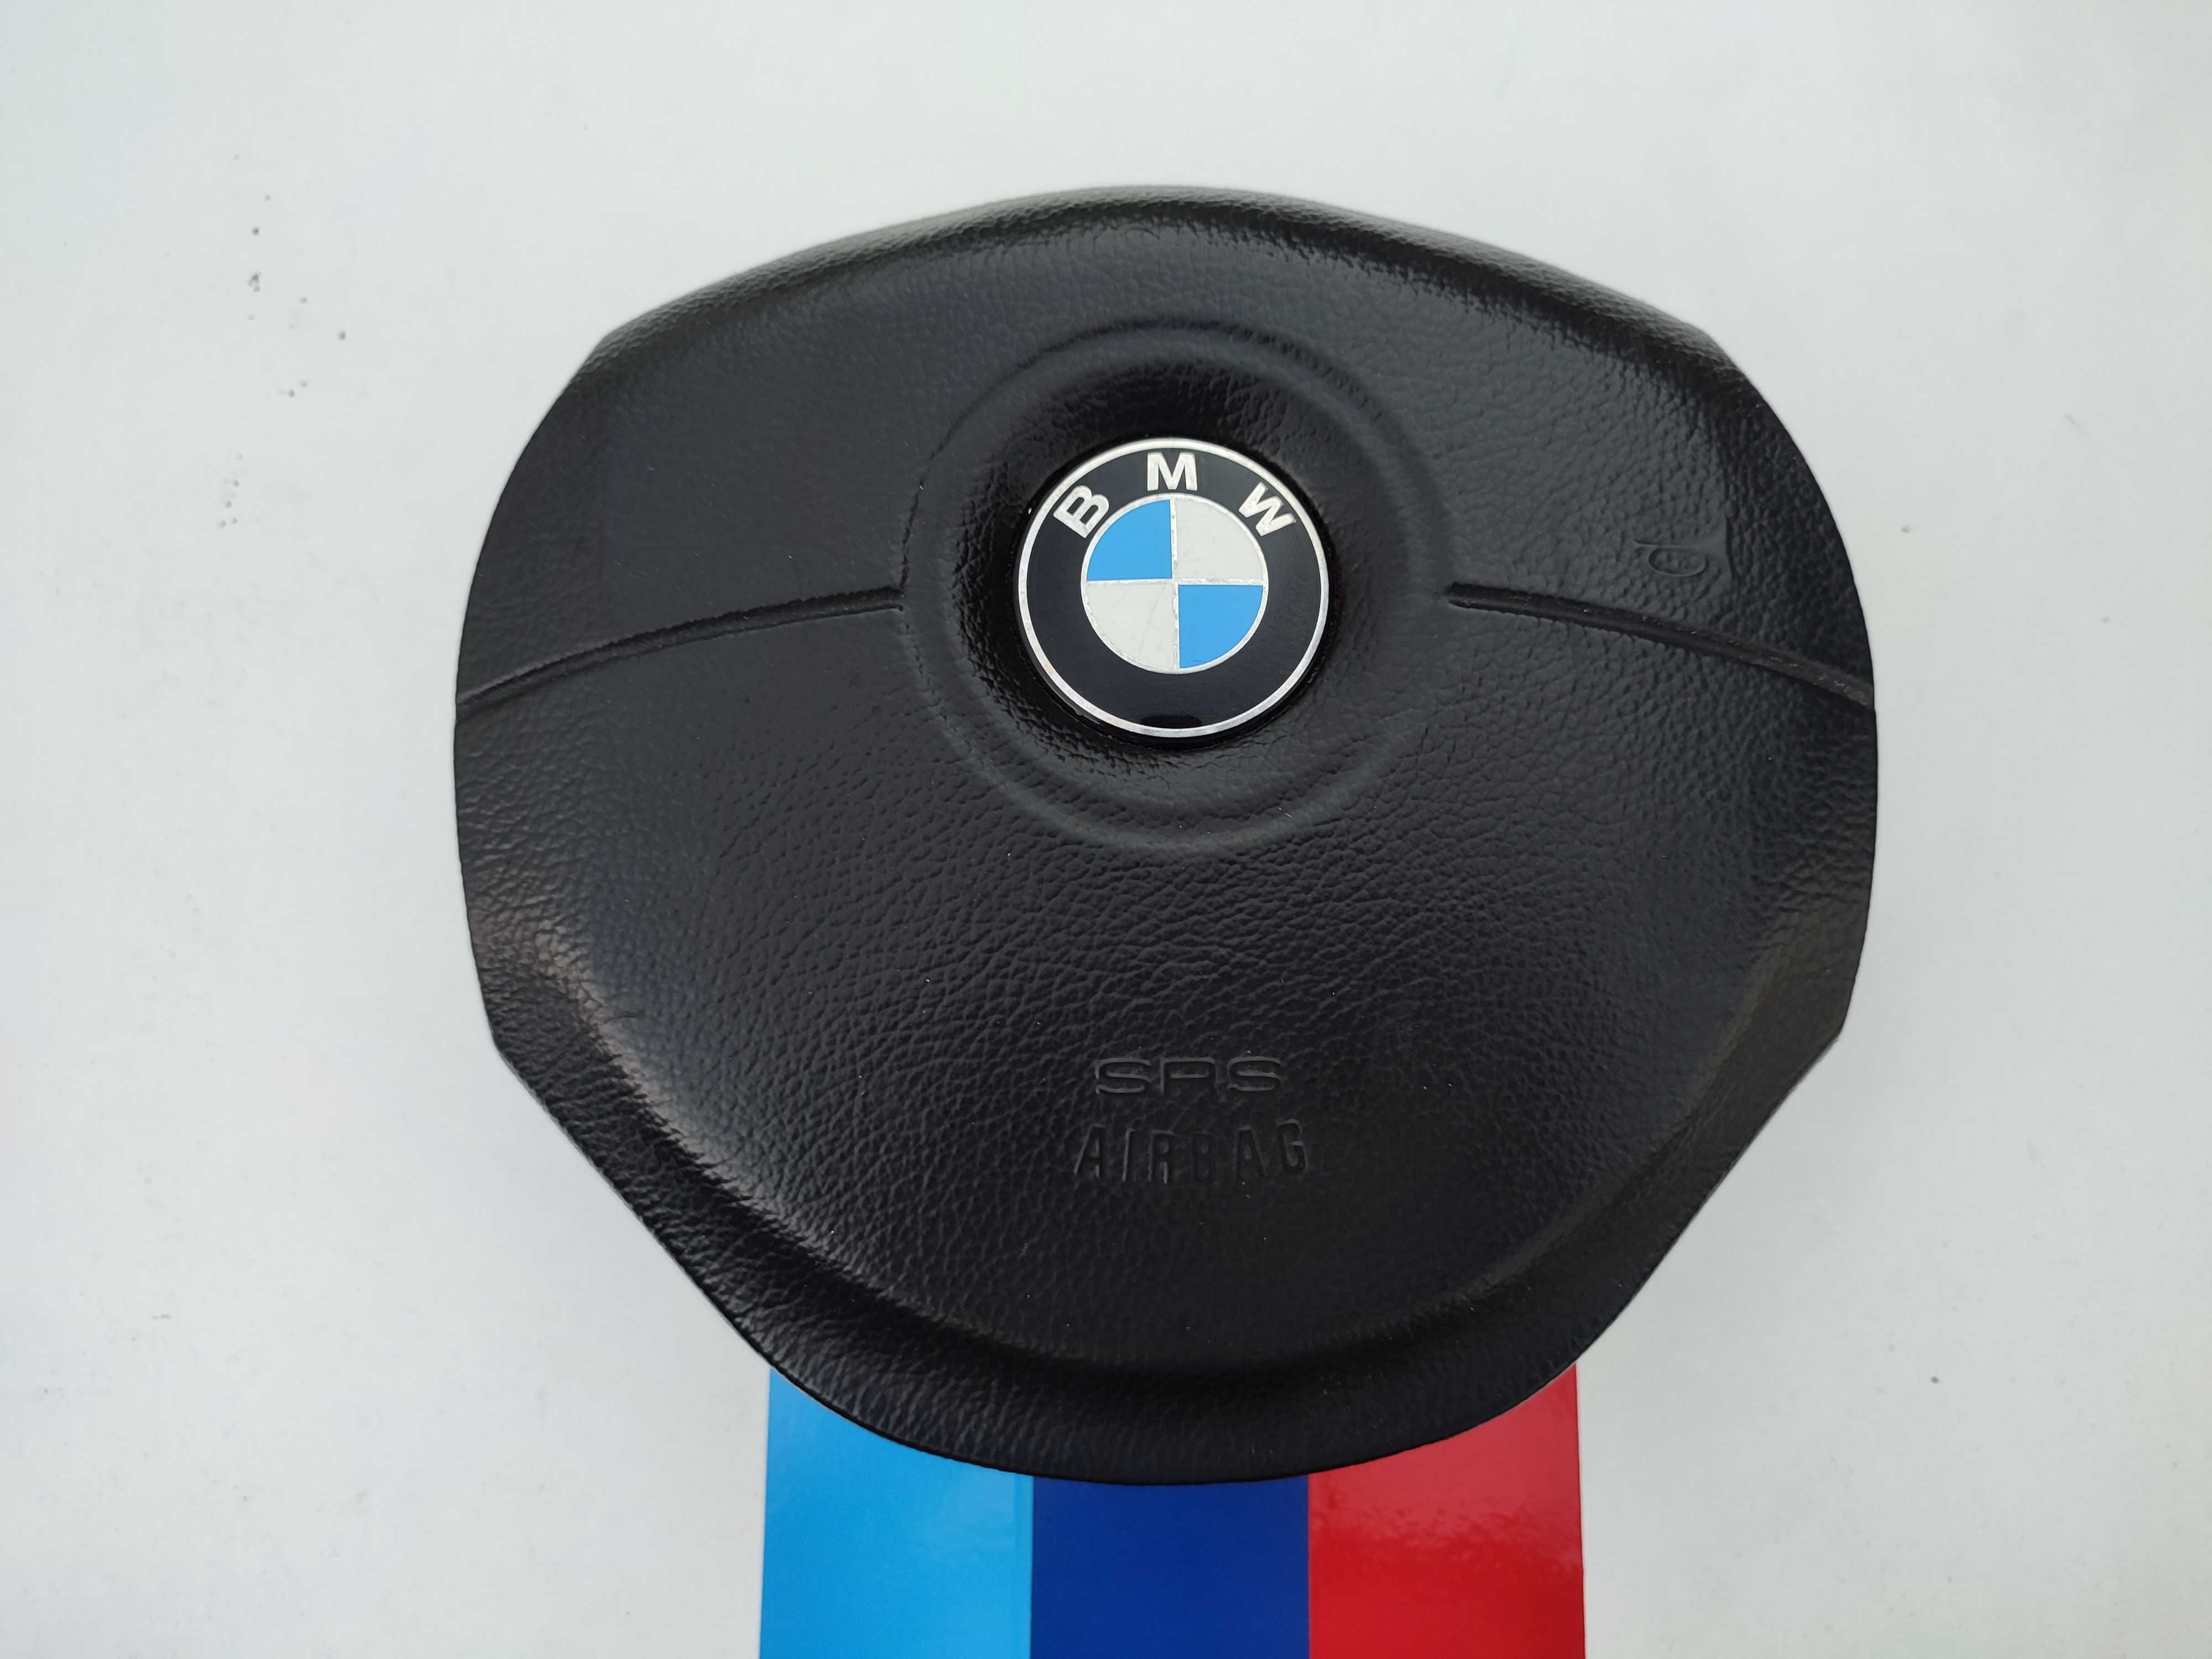 BMW E39 airbag do volante valor negociavel